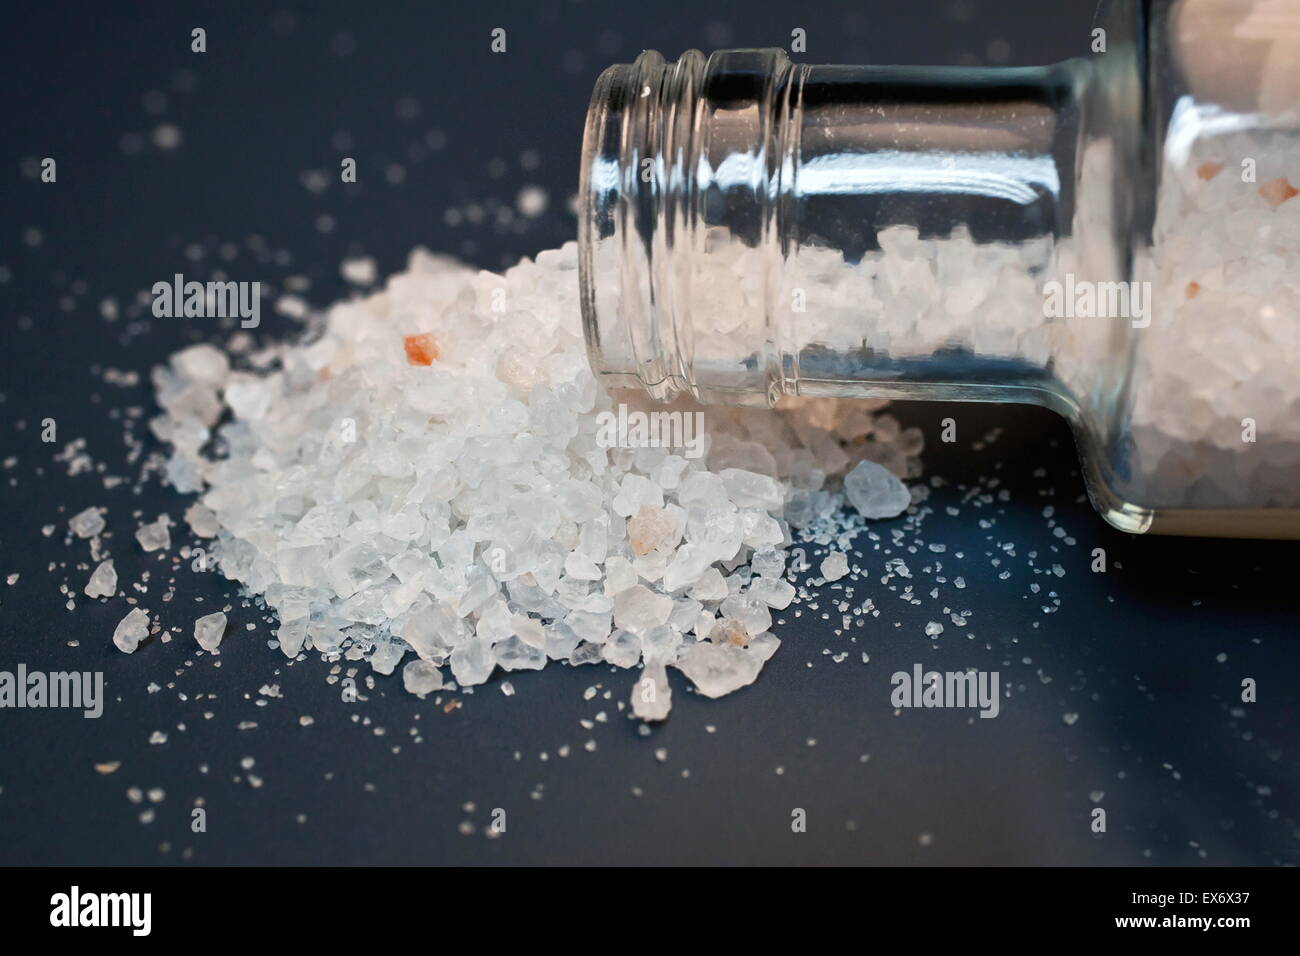 Des sels de bain sont une drogue psychoactive d'abus qui ont causé  l'intoxication dangereuse Photo Stock - Alamy